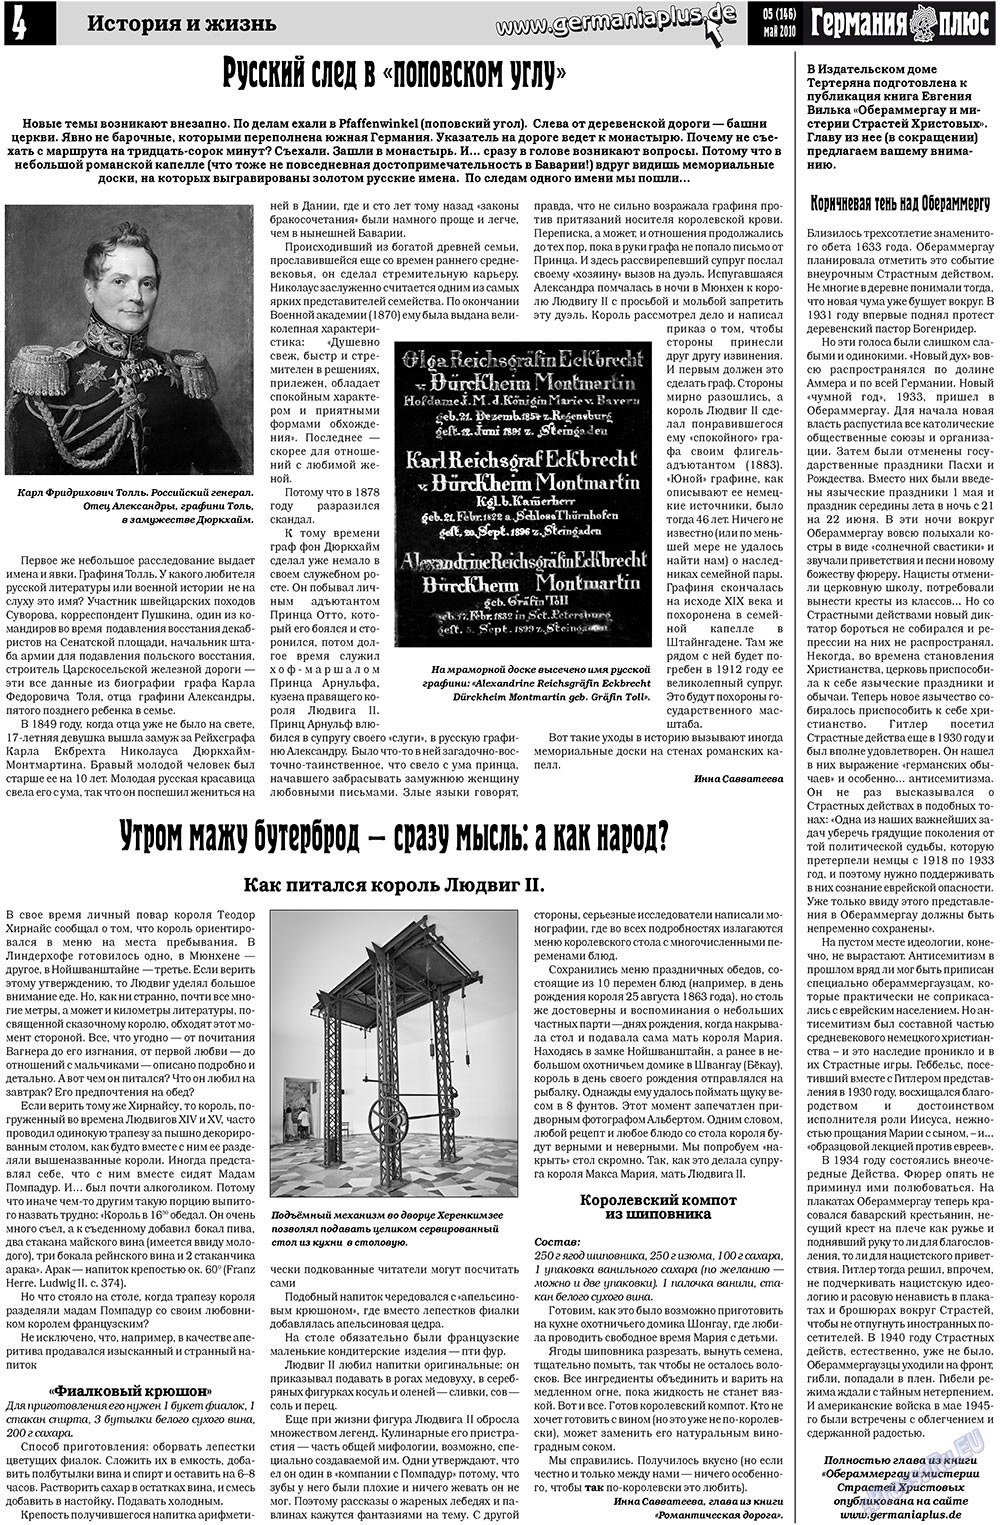 Германия плюс, газета. 2010 №5 стр.4